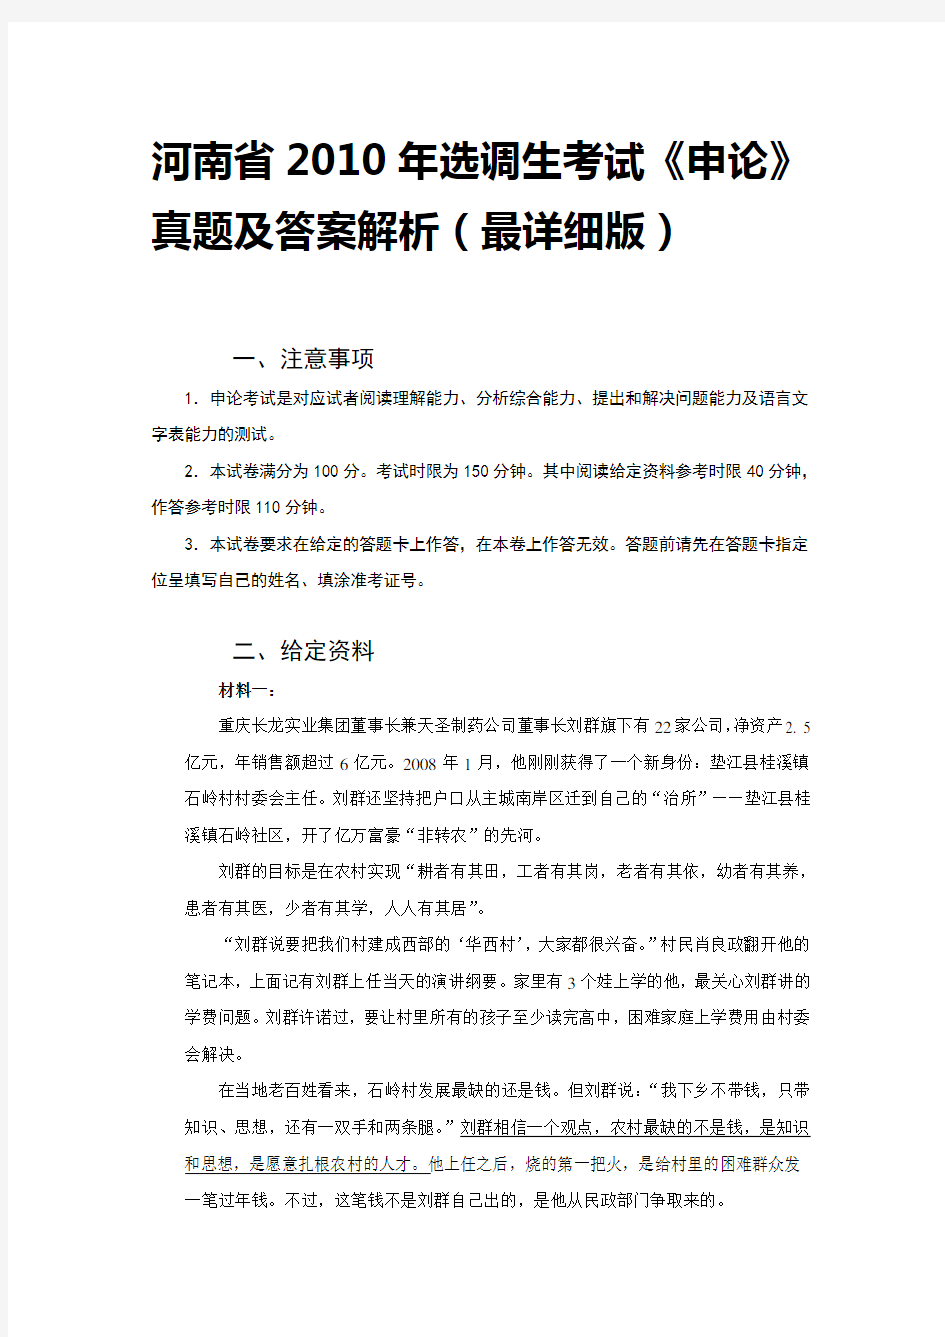 河南省2010年选调生考试《申论》真题及答案解析(最详细版)